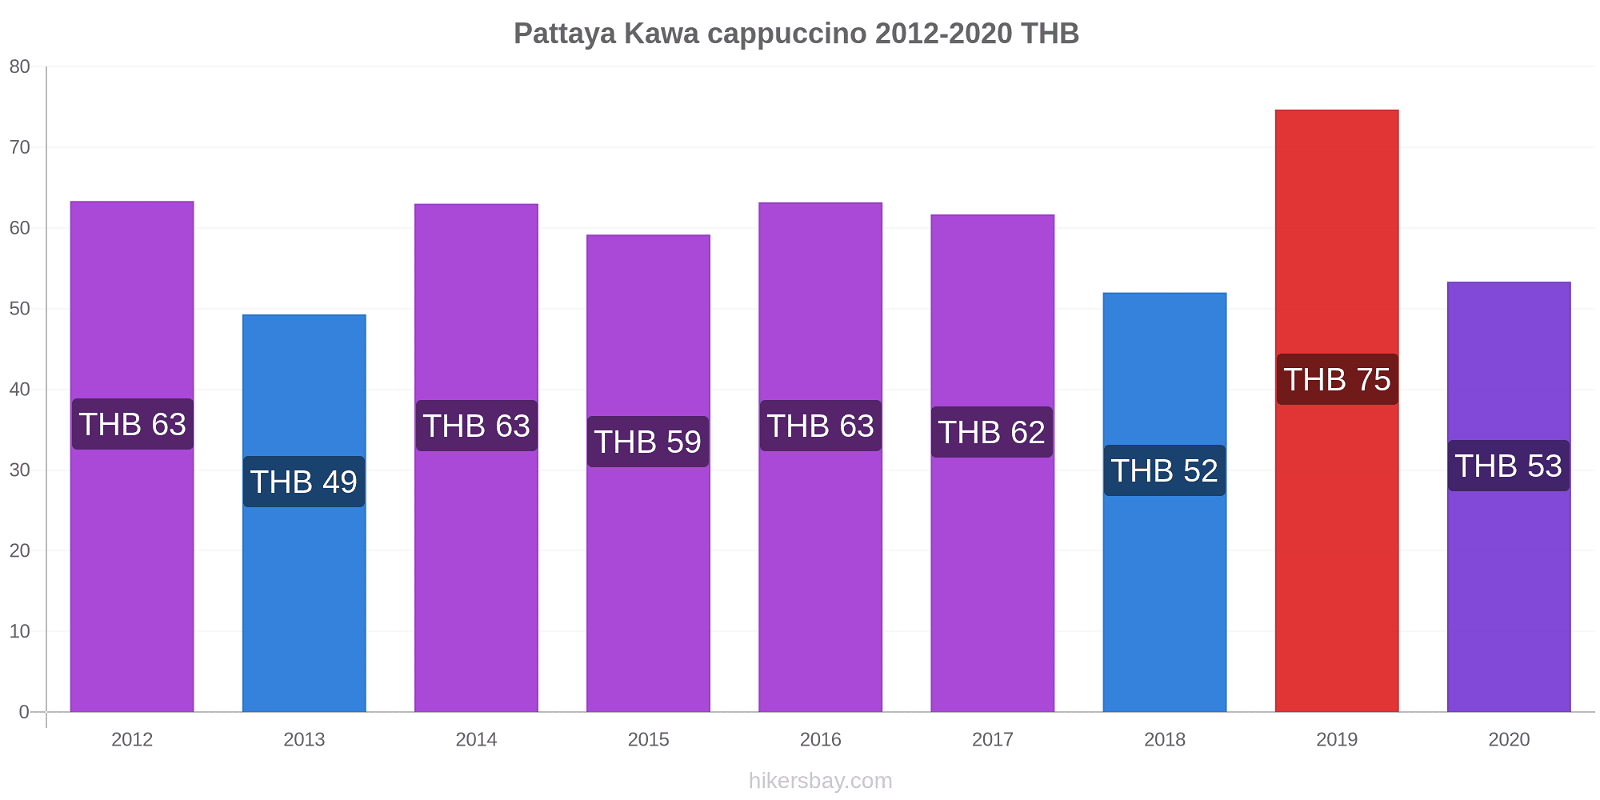 Pattaya zmiany cen Kawa cappuccino hikersbay.com